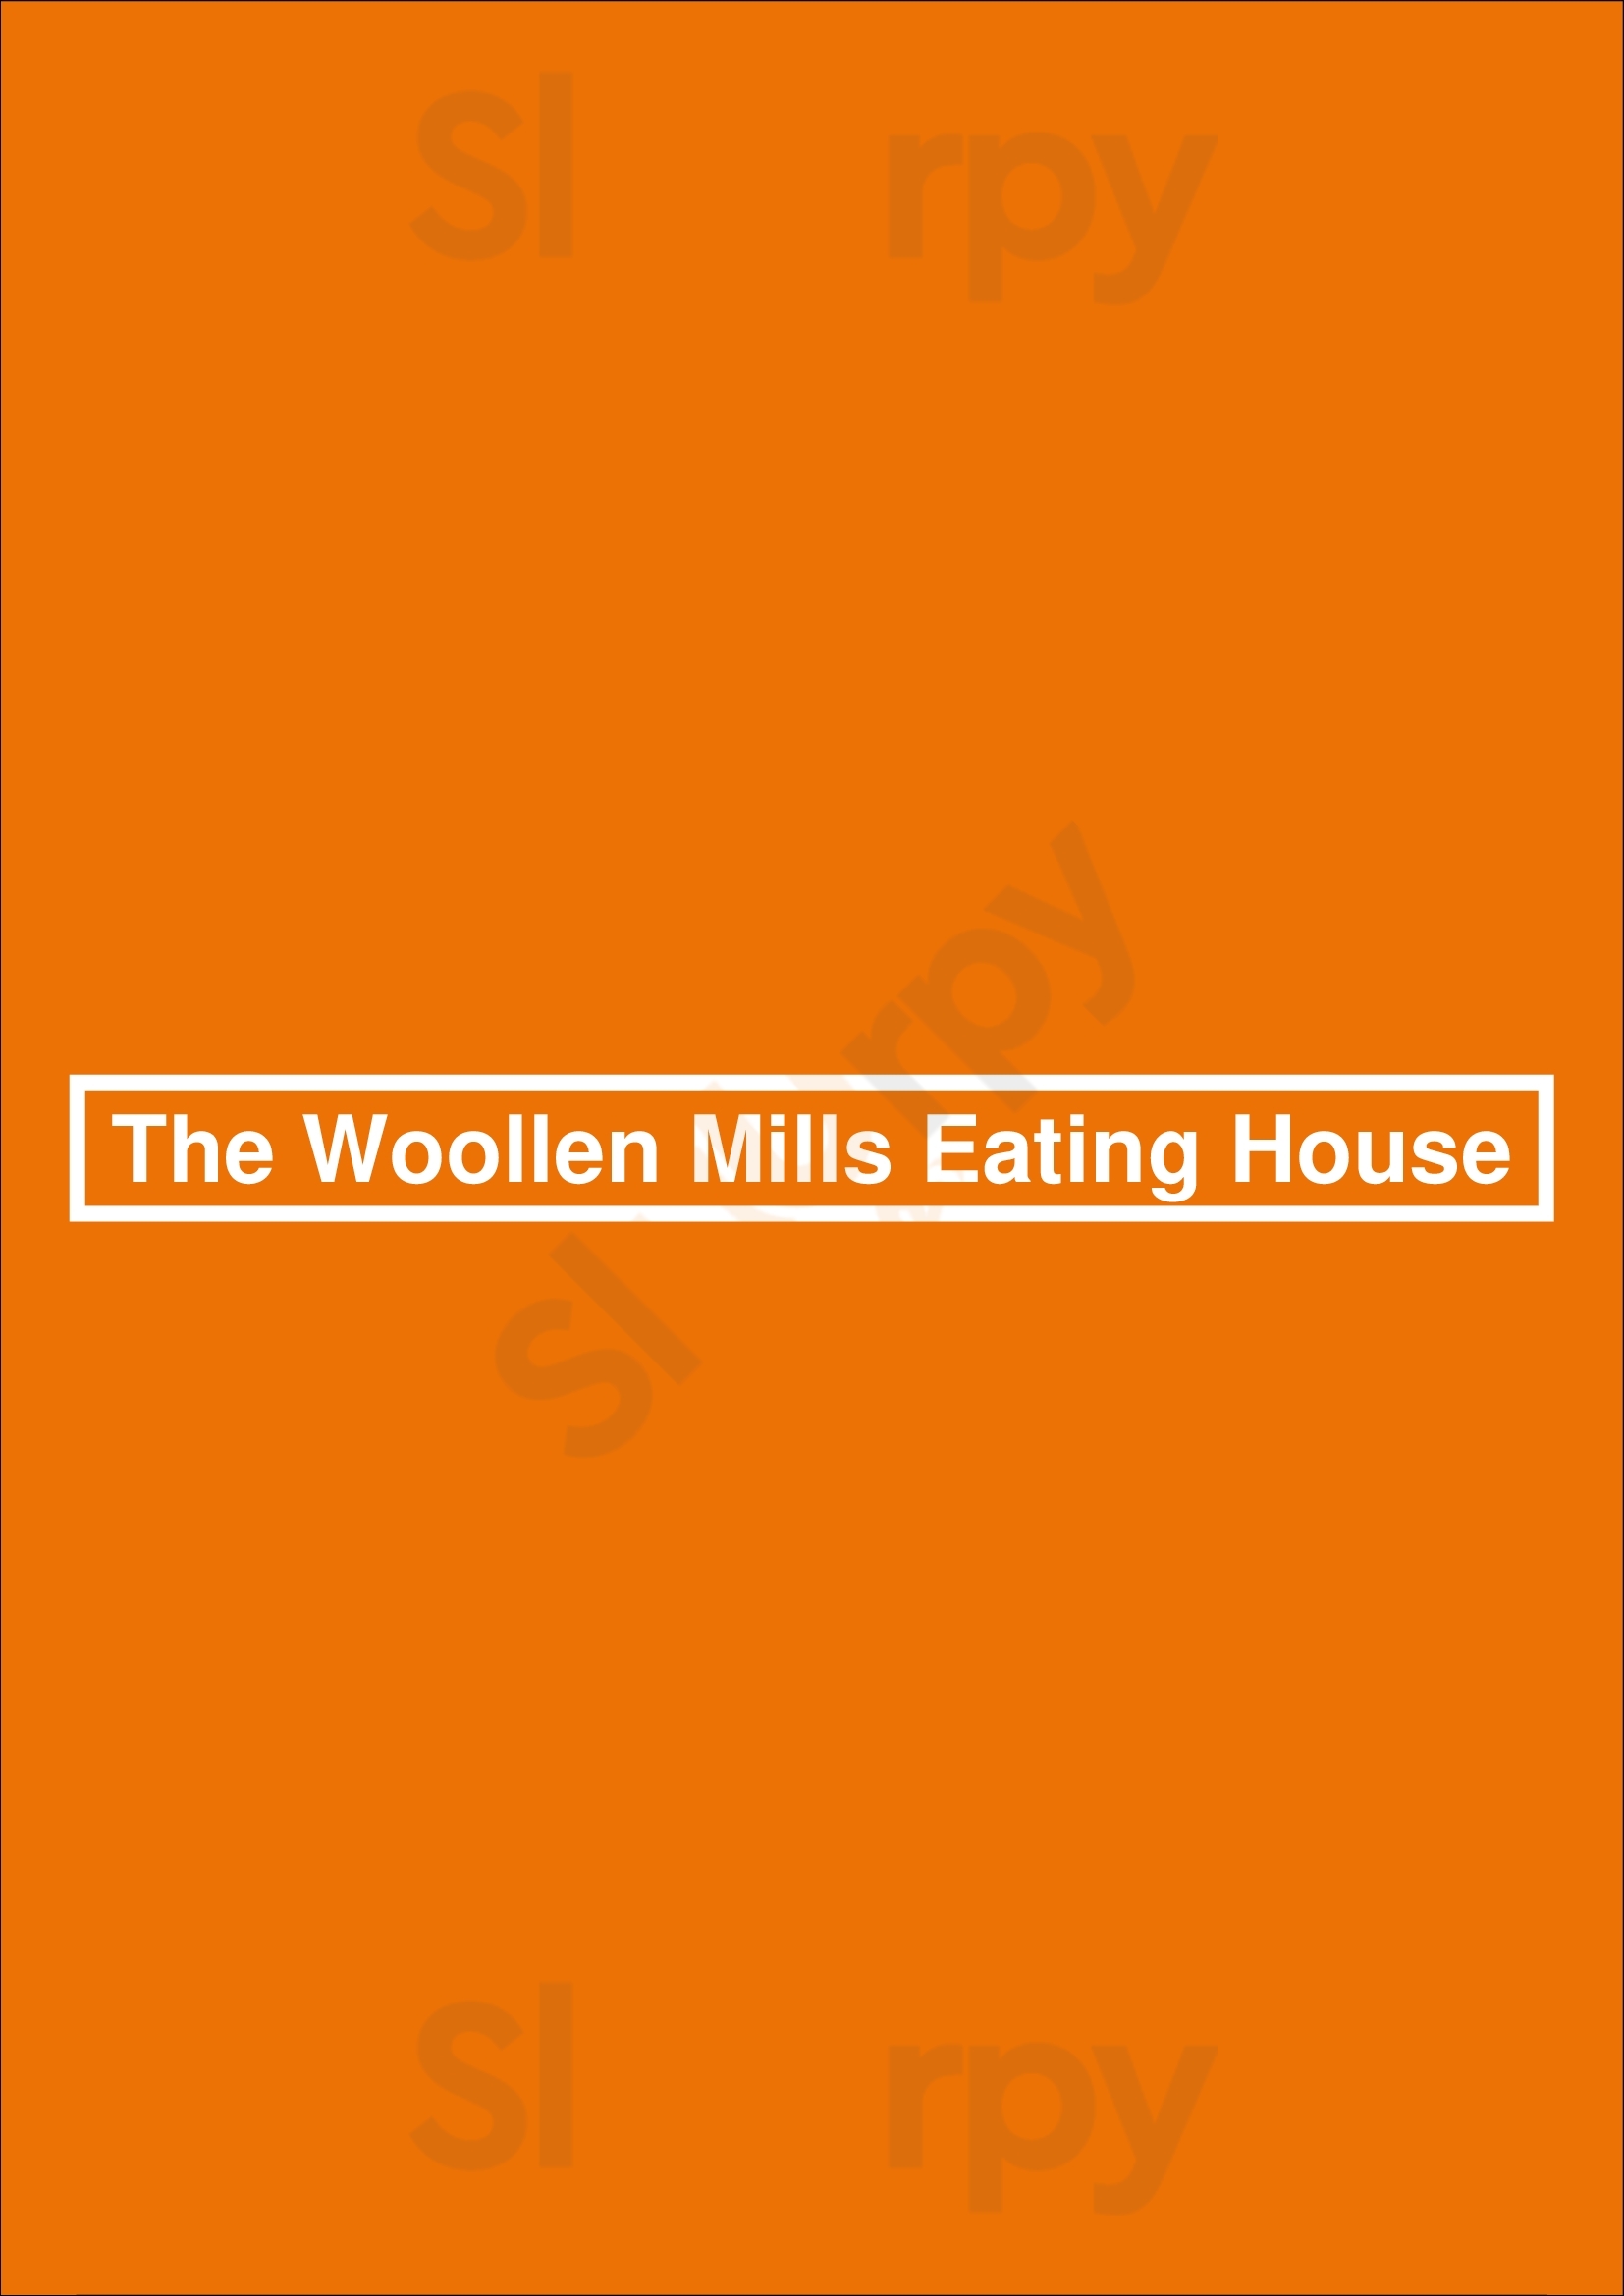 The Woollen Mills Eating House Dublin Menu - 1